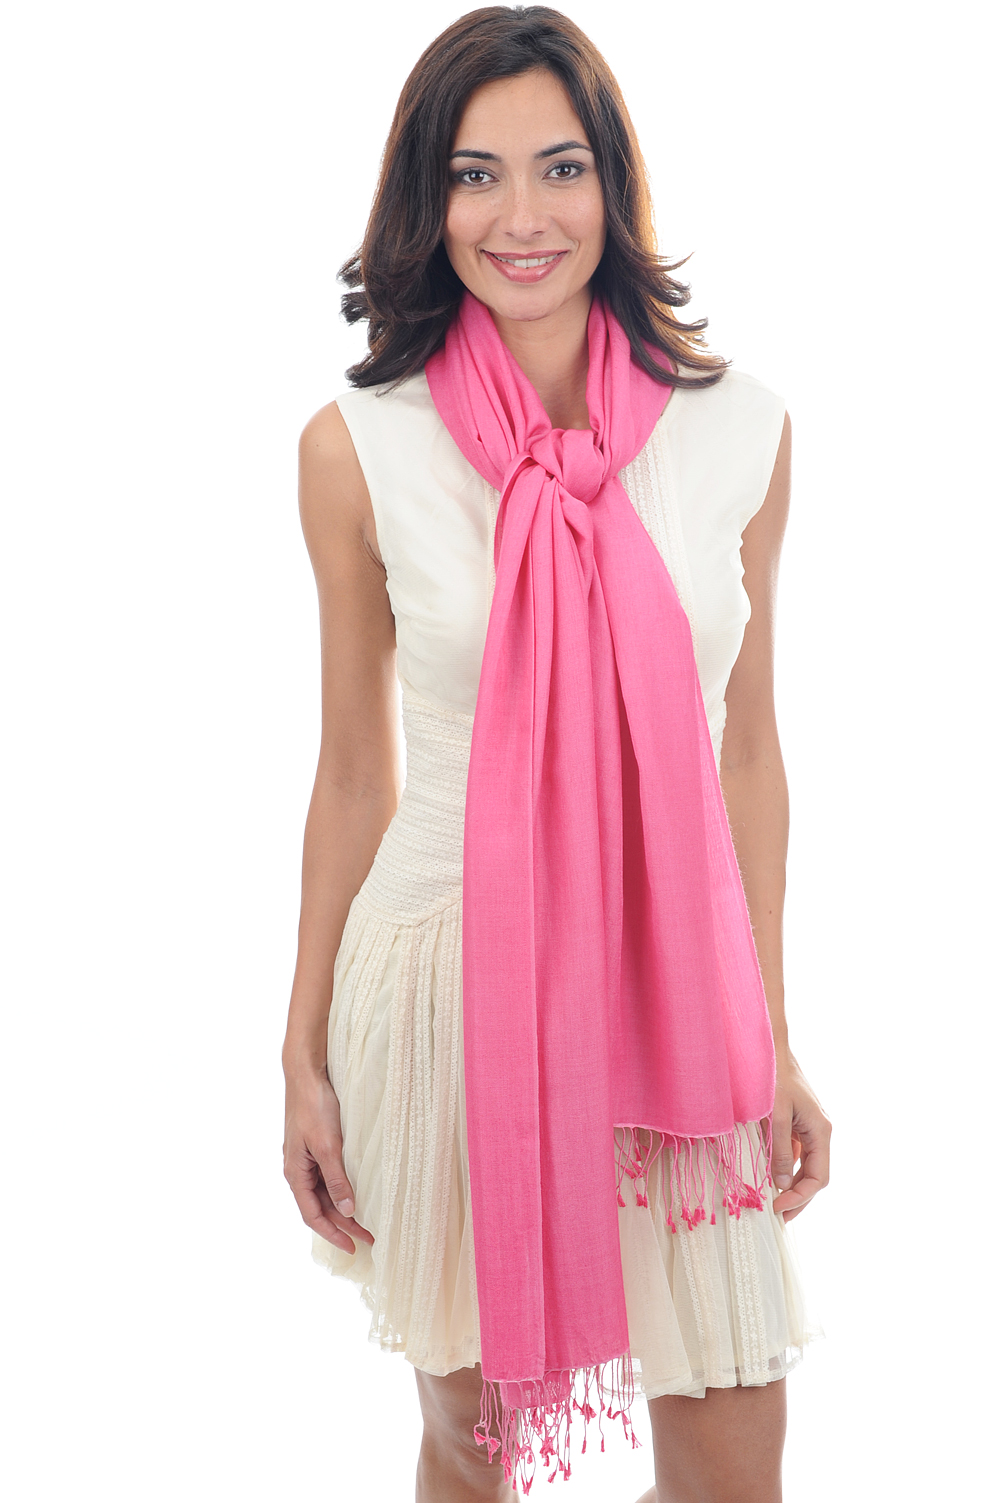 Cachemire et Soie accessoires platine rose soutenu 201 cm x 71 cm